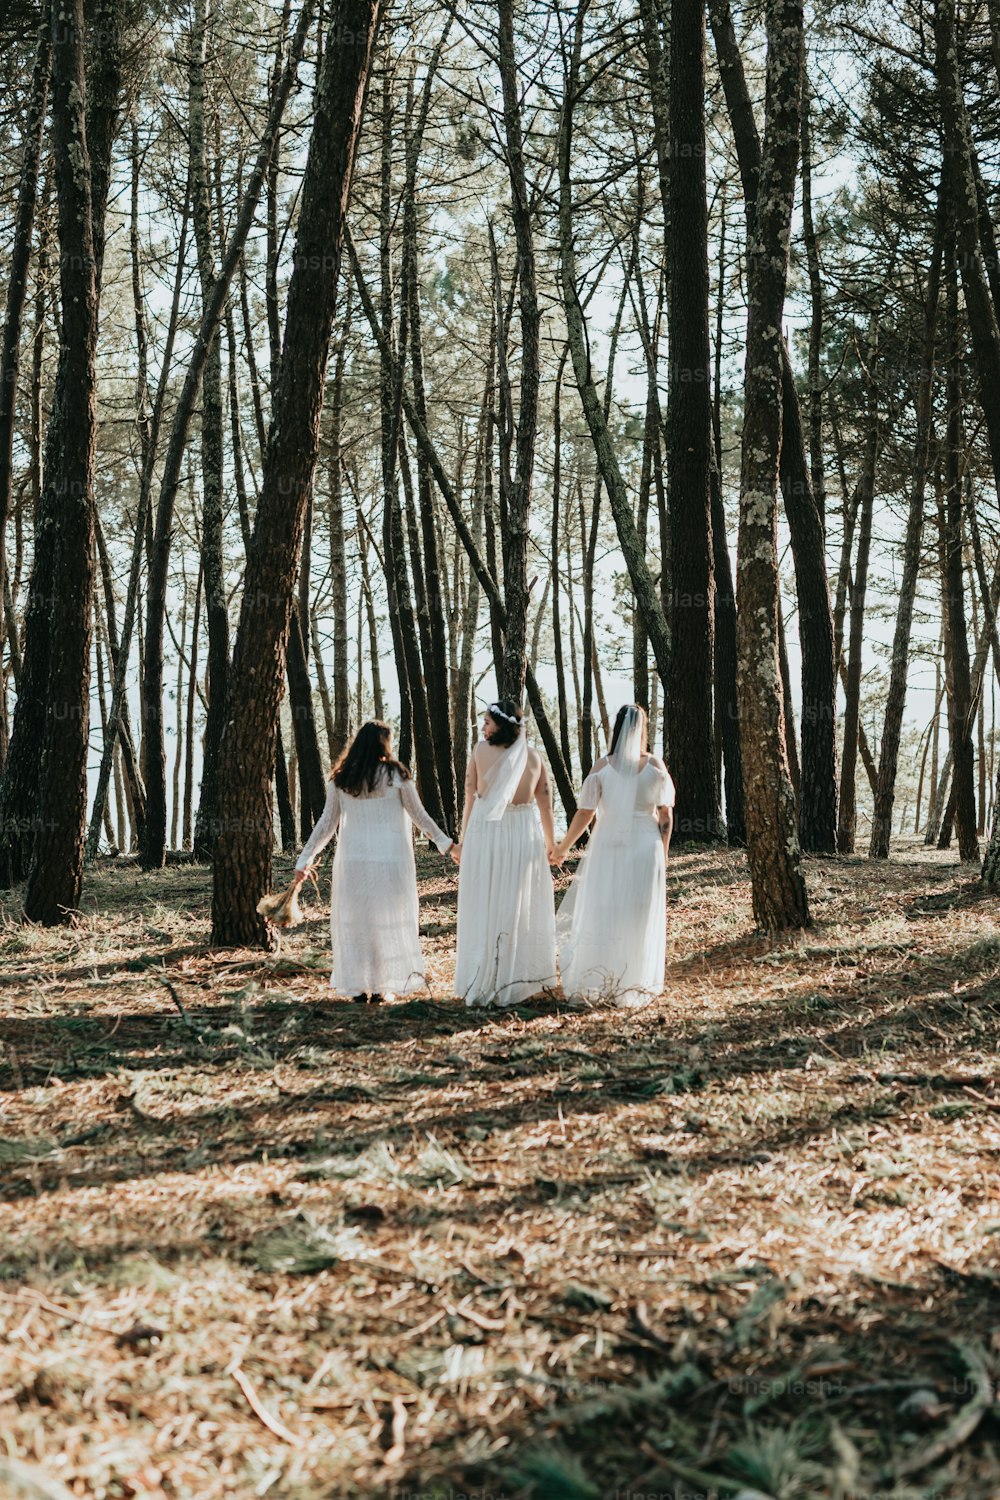 Un grupo de mujeres con vestidos blancos caminando por un bosque